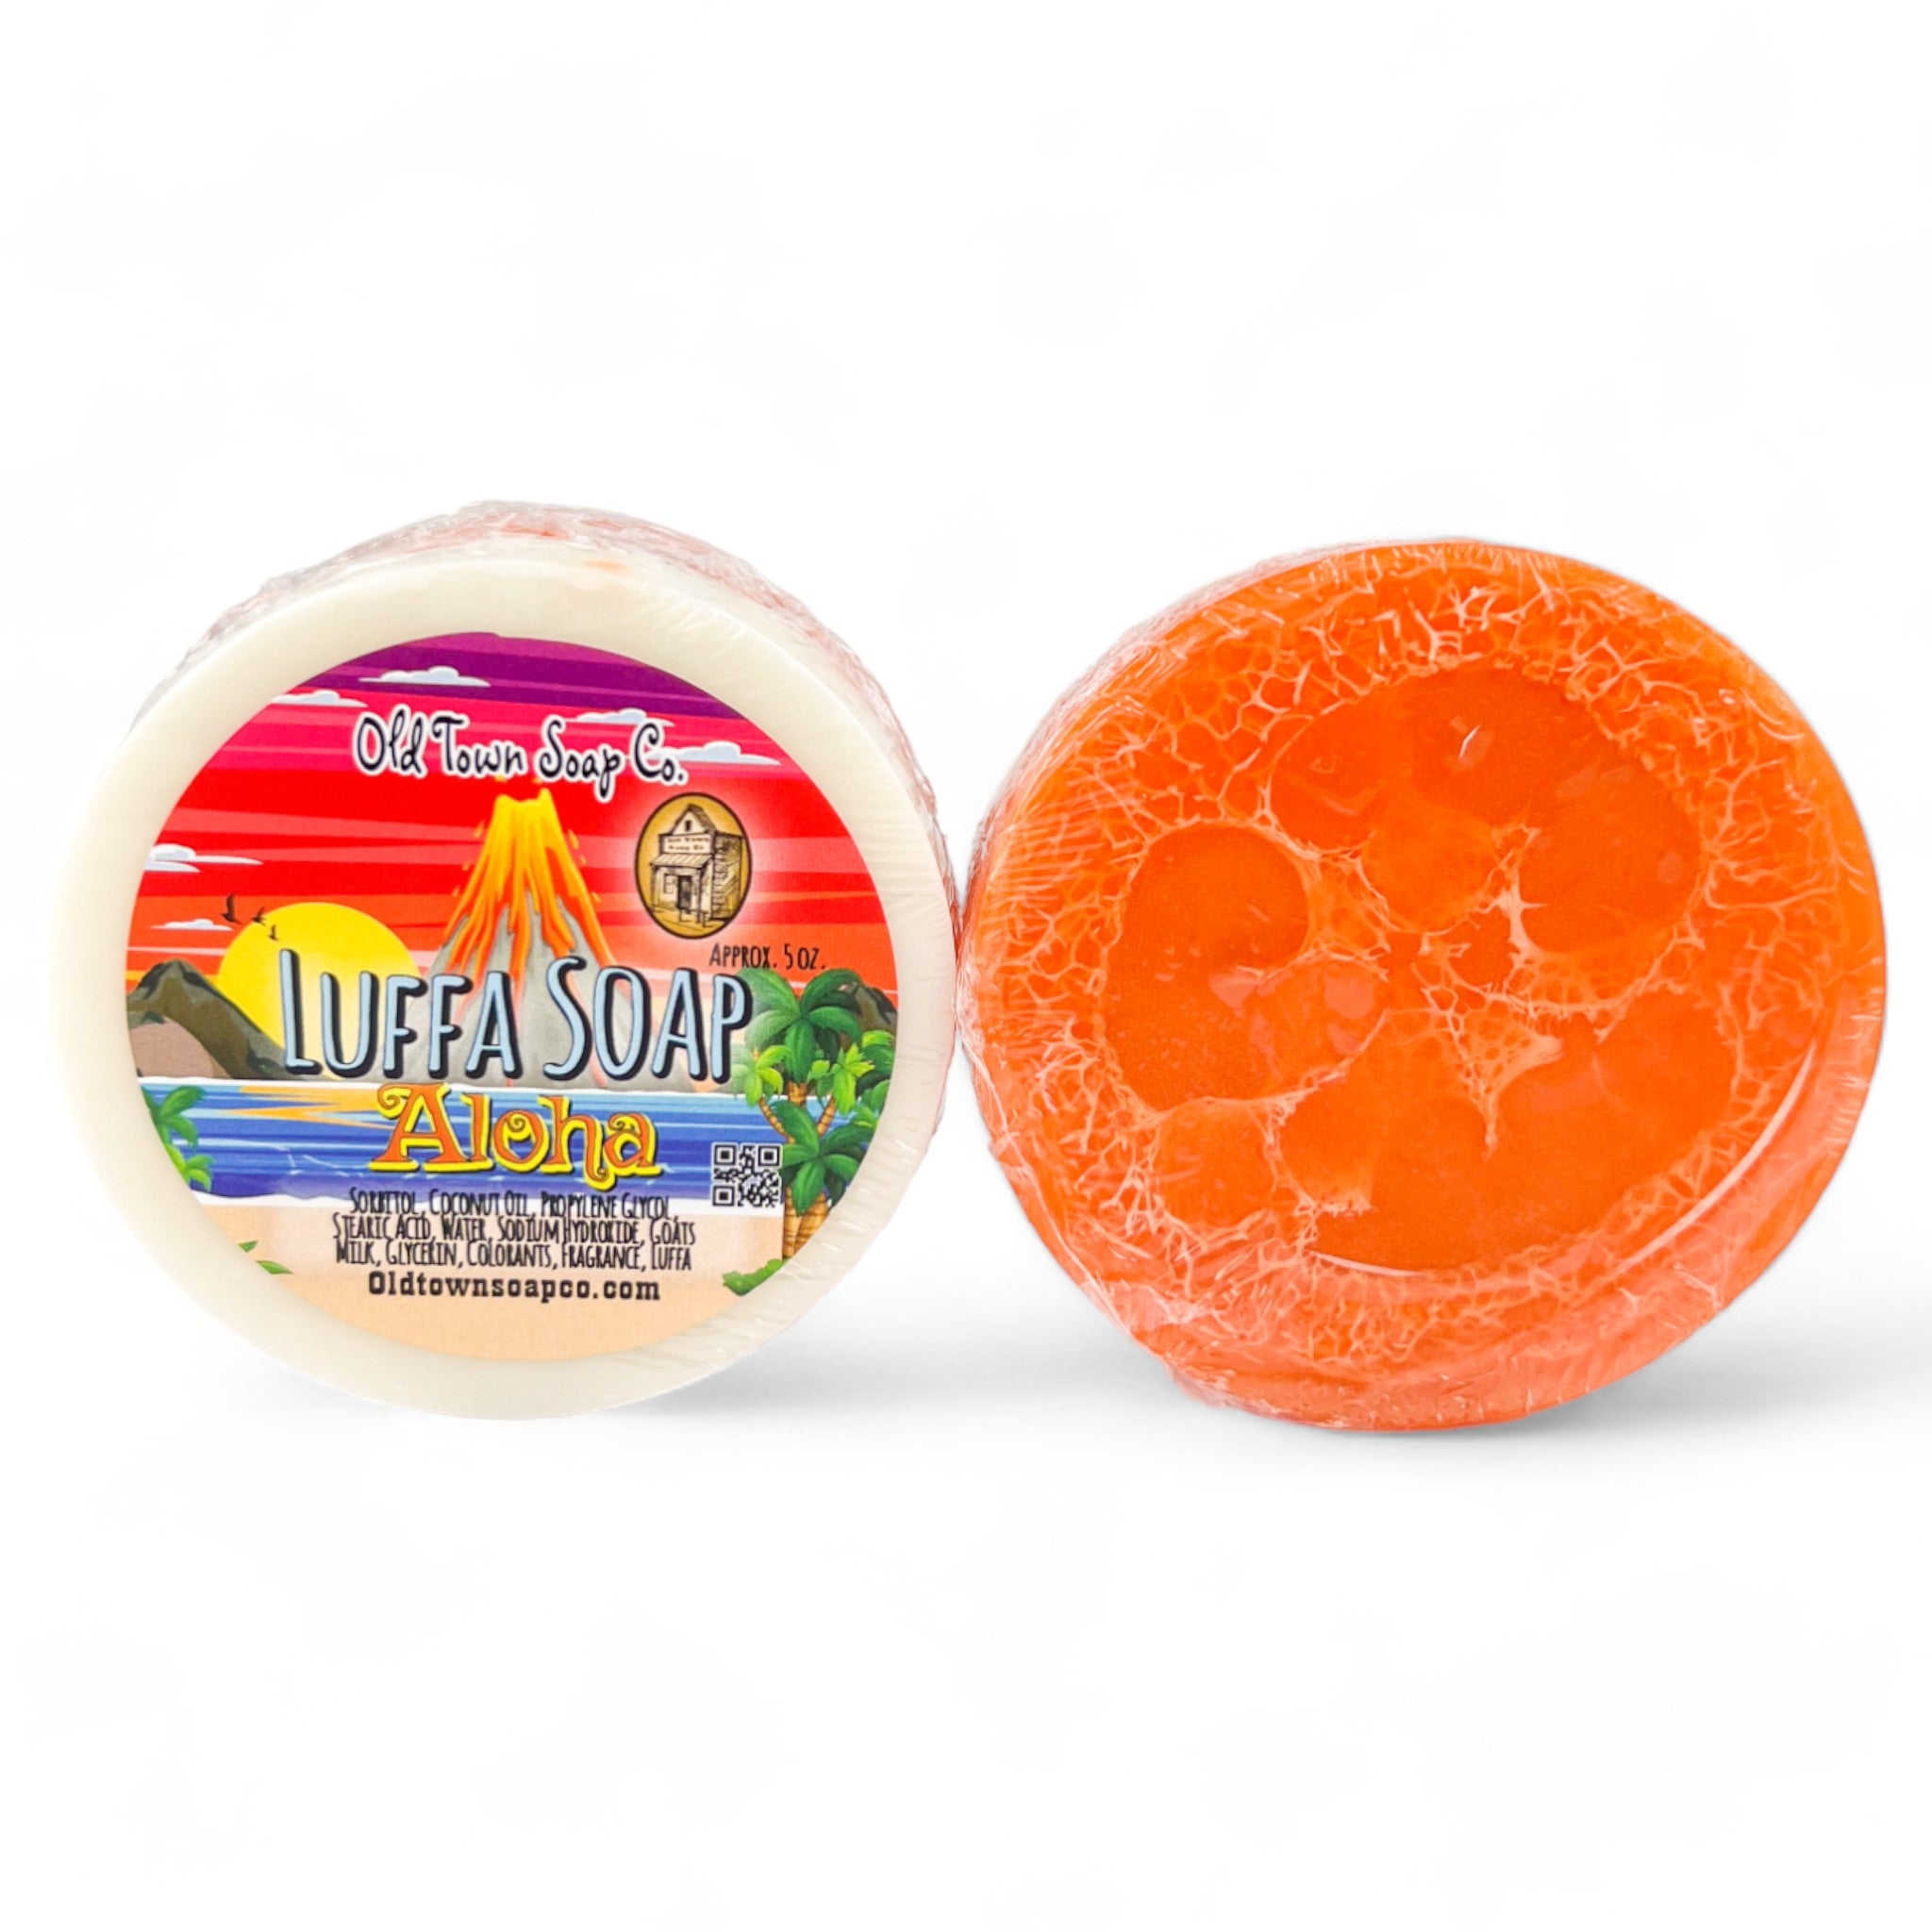 Aloha -Luffa Soap - Old Town Soap Co.